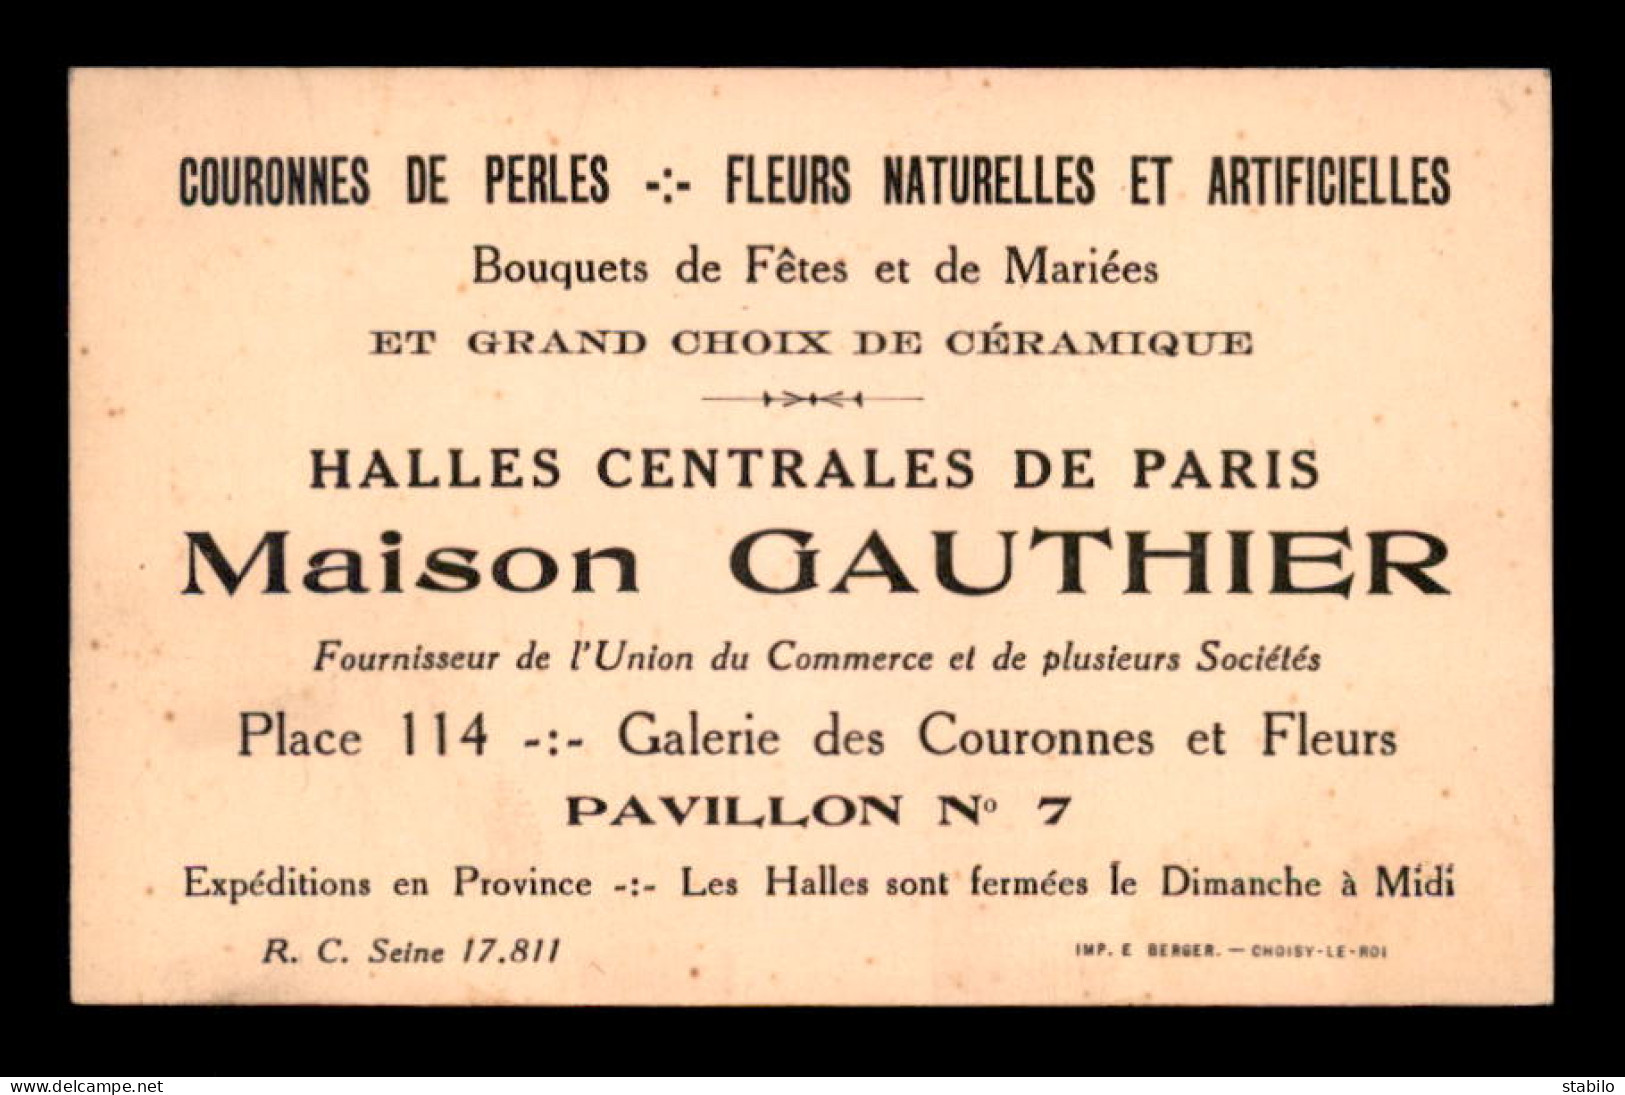 CARTES DE VISITE - MAISON GAUTHIER, FLEURS NATURELLES ET ARTIFICIELLES, HALLES CENTRALES DE PARIS - FORMAT 10.5 X 7 CM - Cartes De Visite